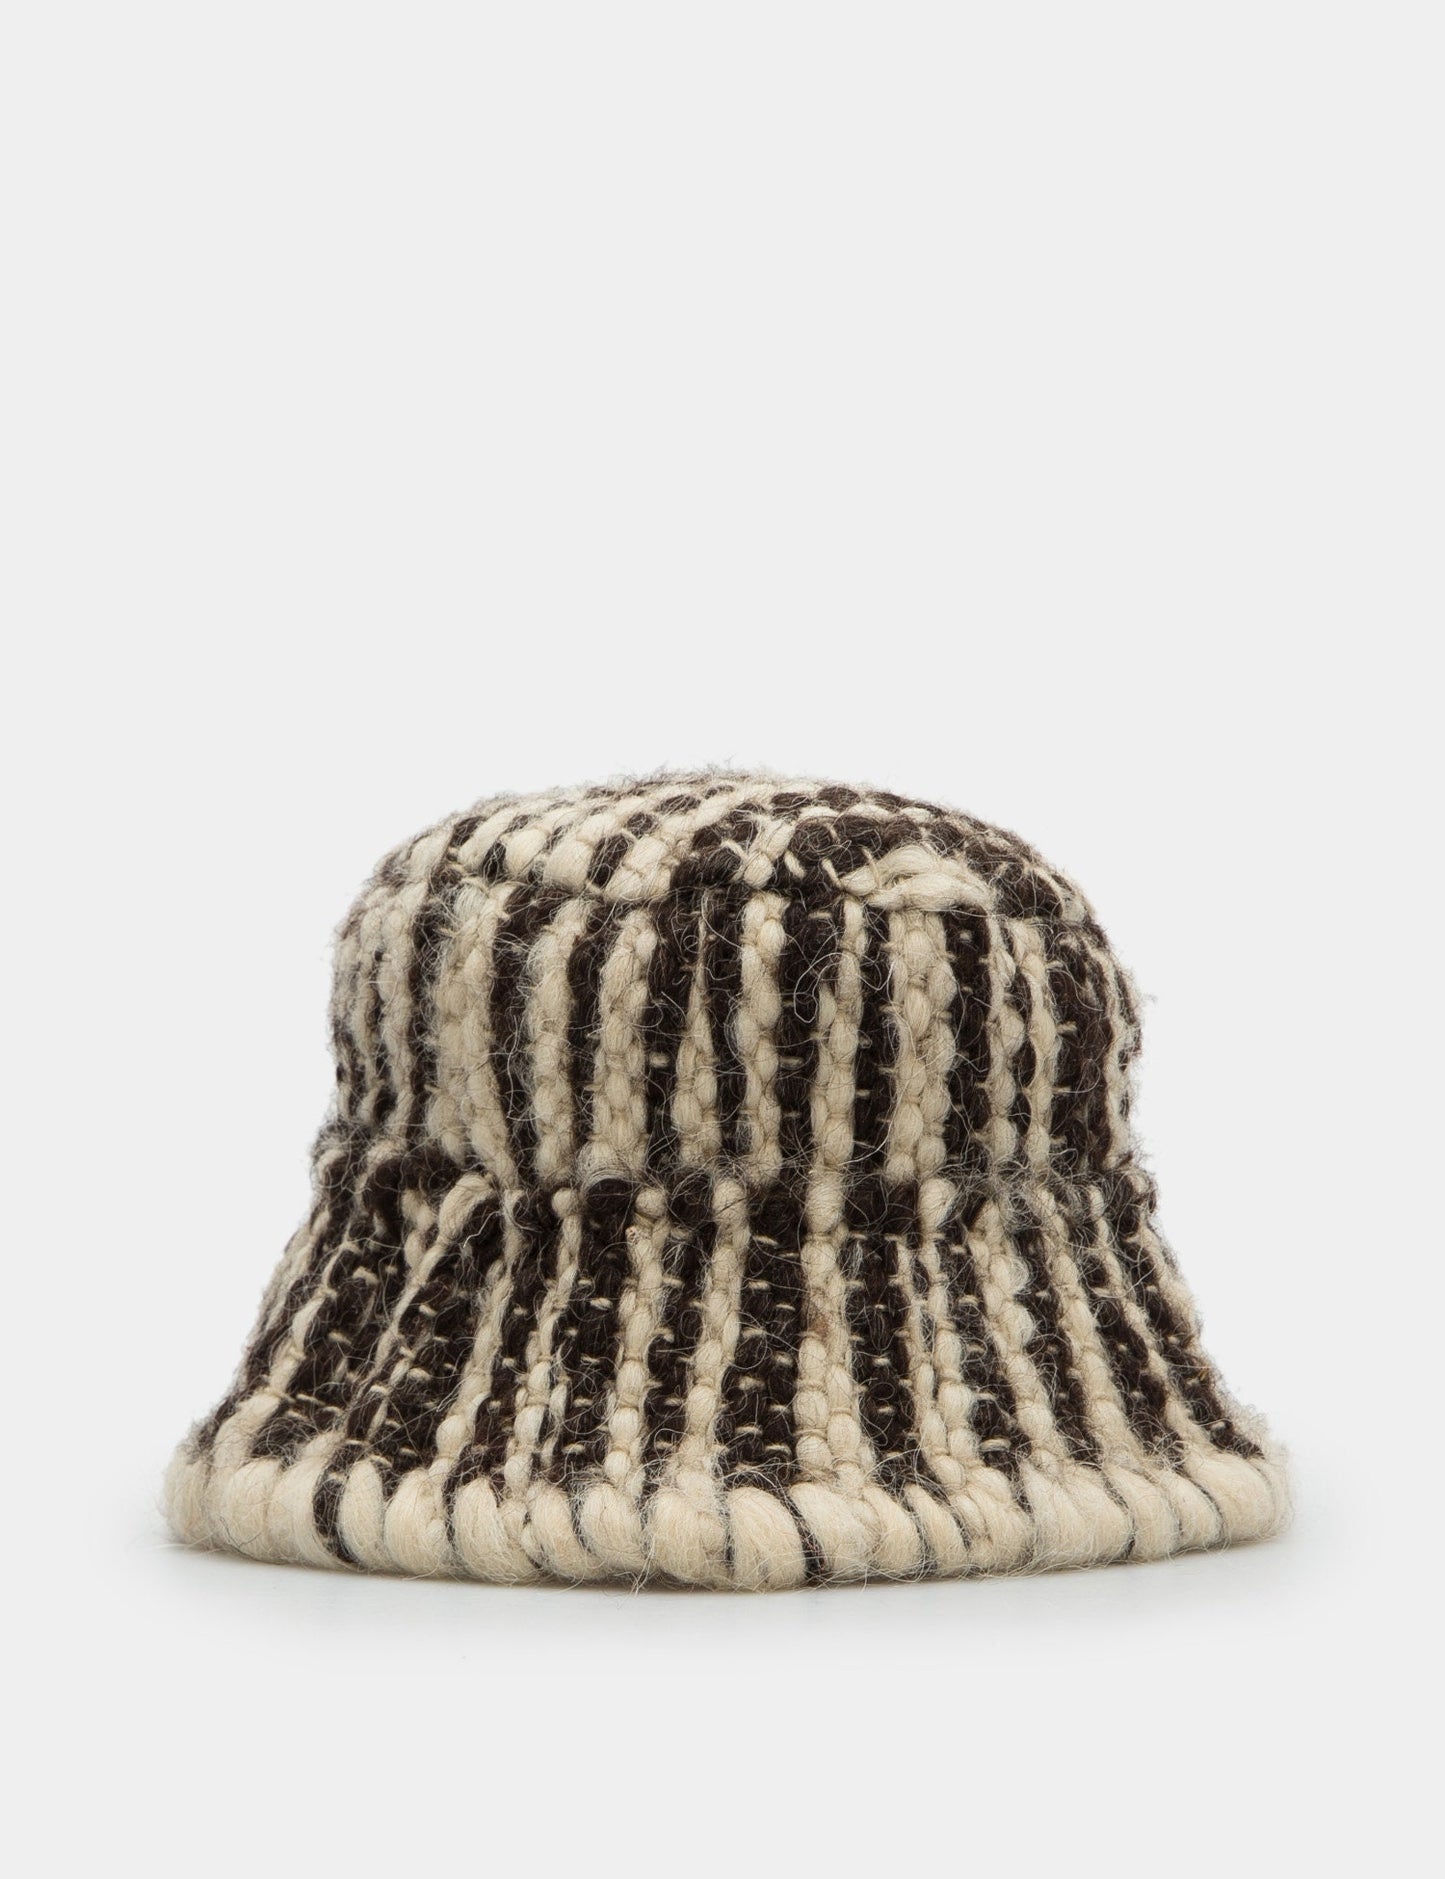 Striped wool hat